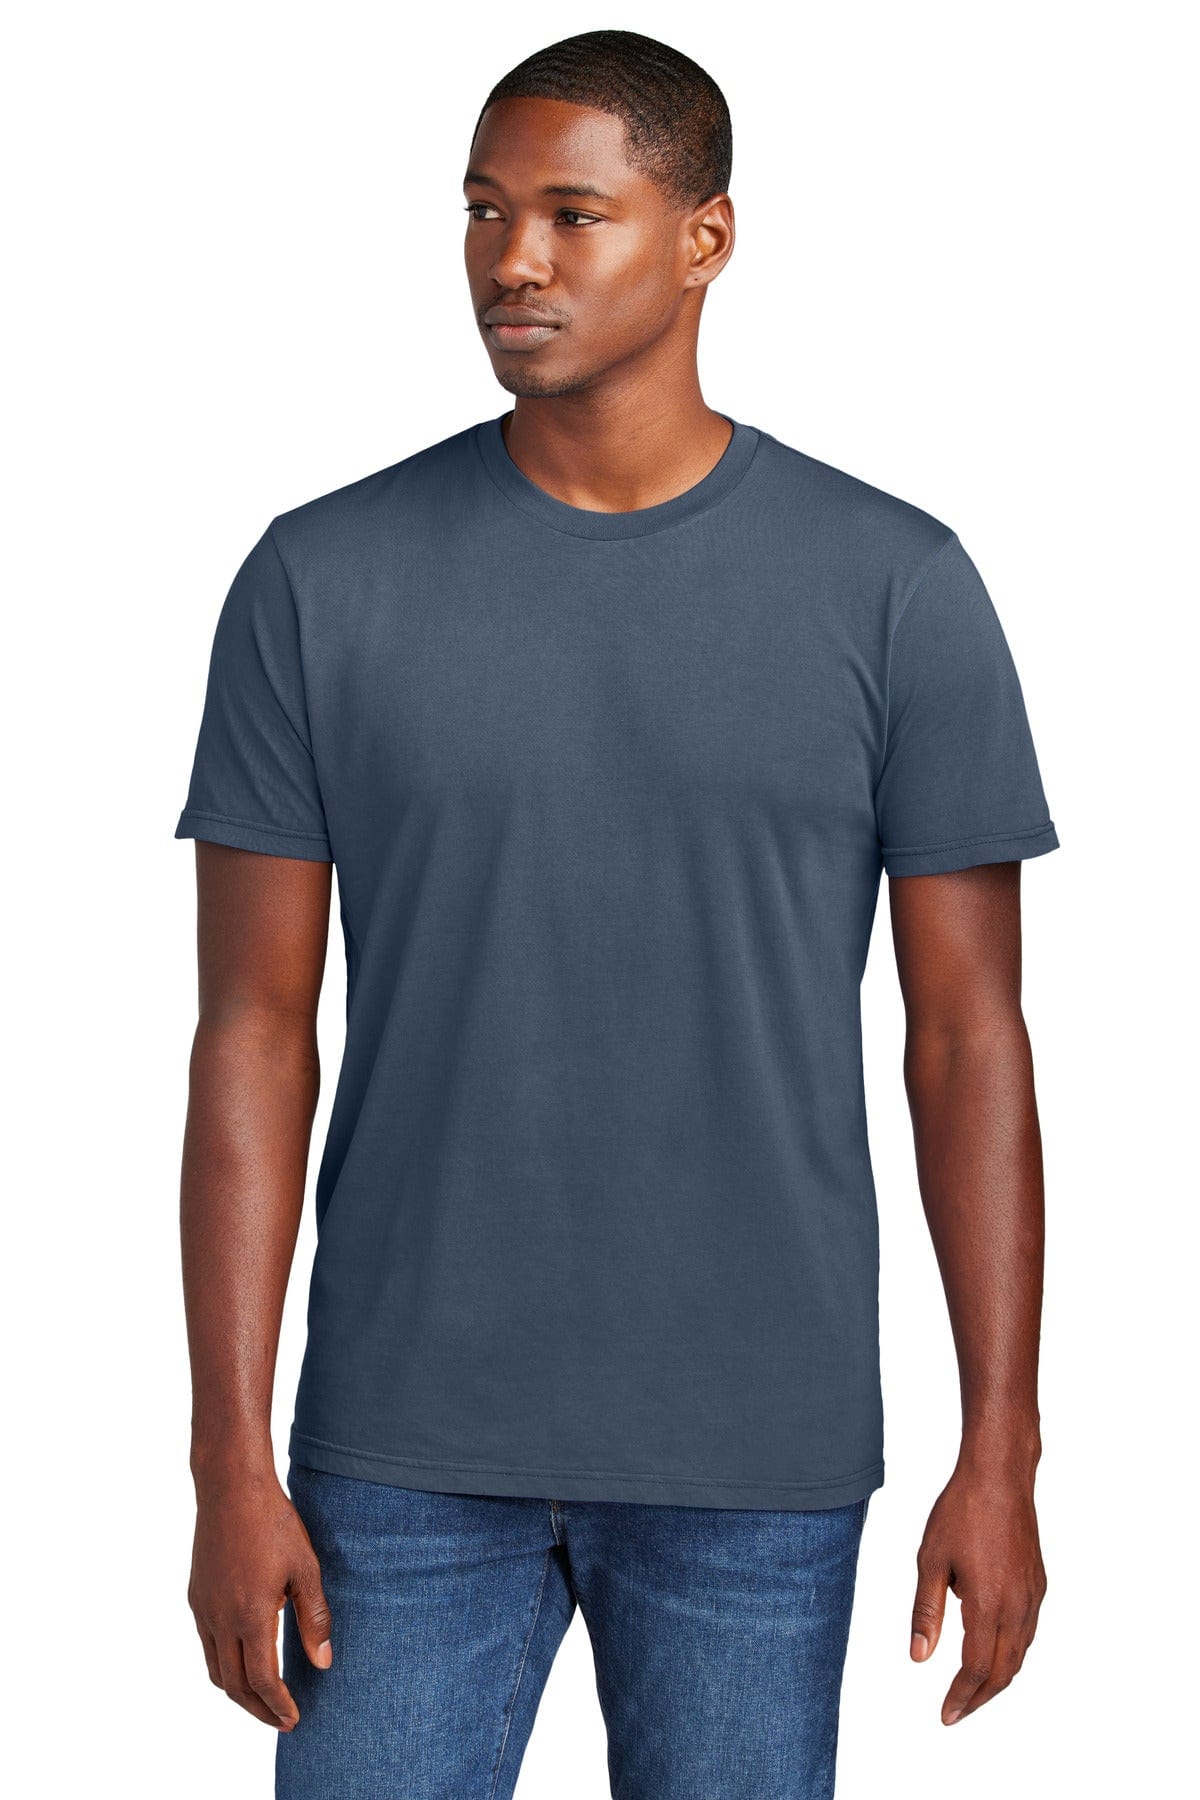 District Wash DT2101: Wholesale T-Shirt